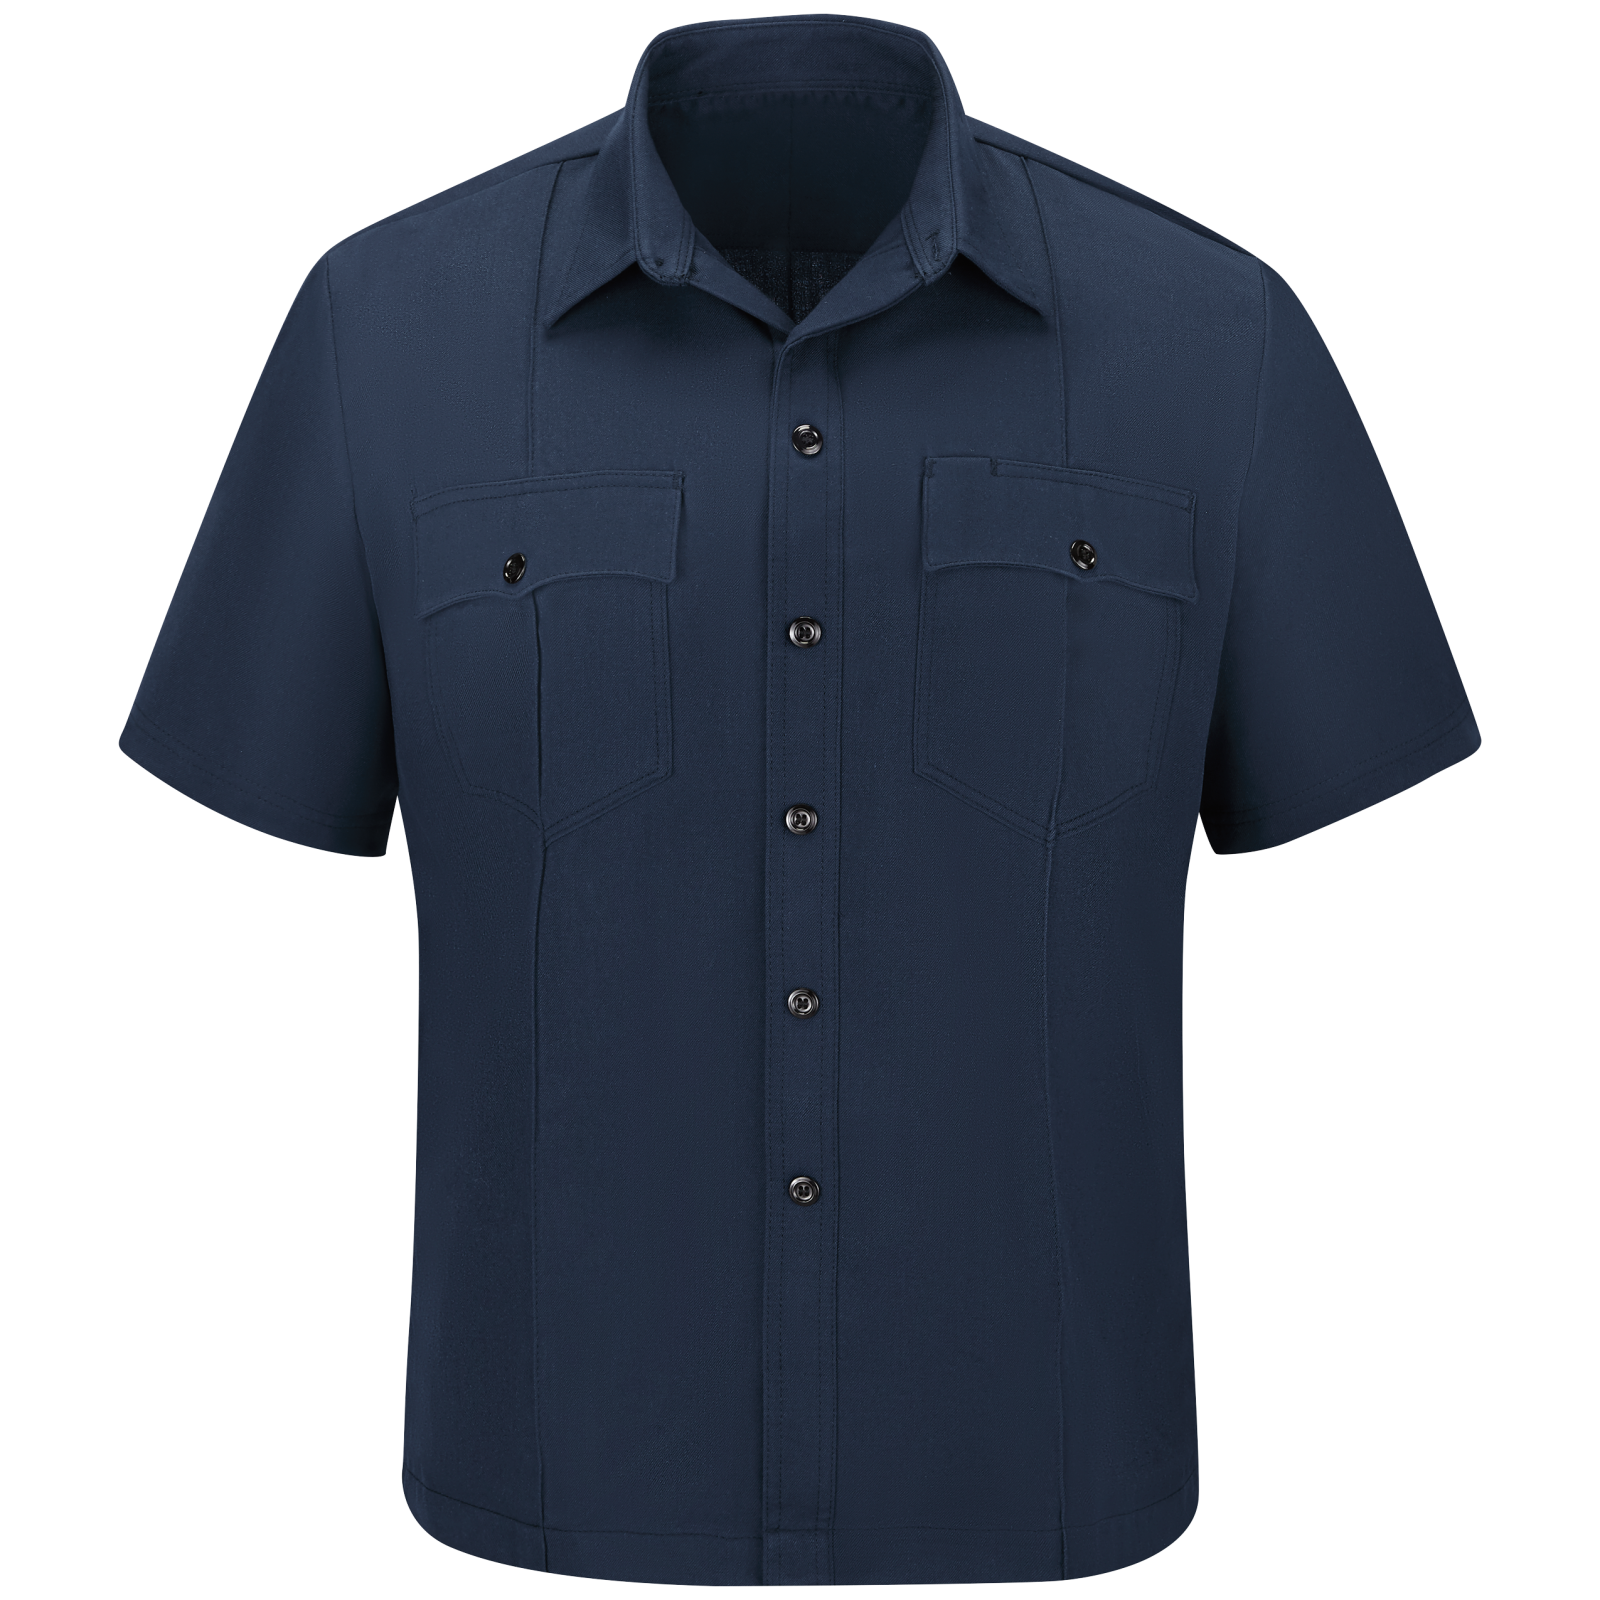 Men's Station No. 73 Untucked Uniform Shirt | Workrite® Fire Service